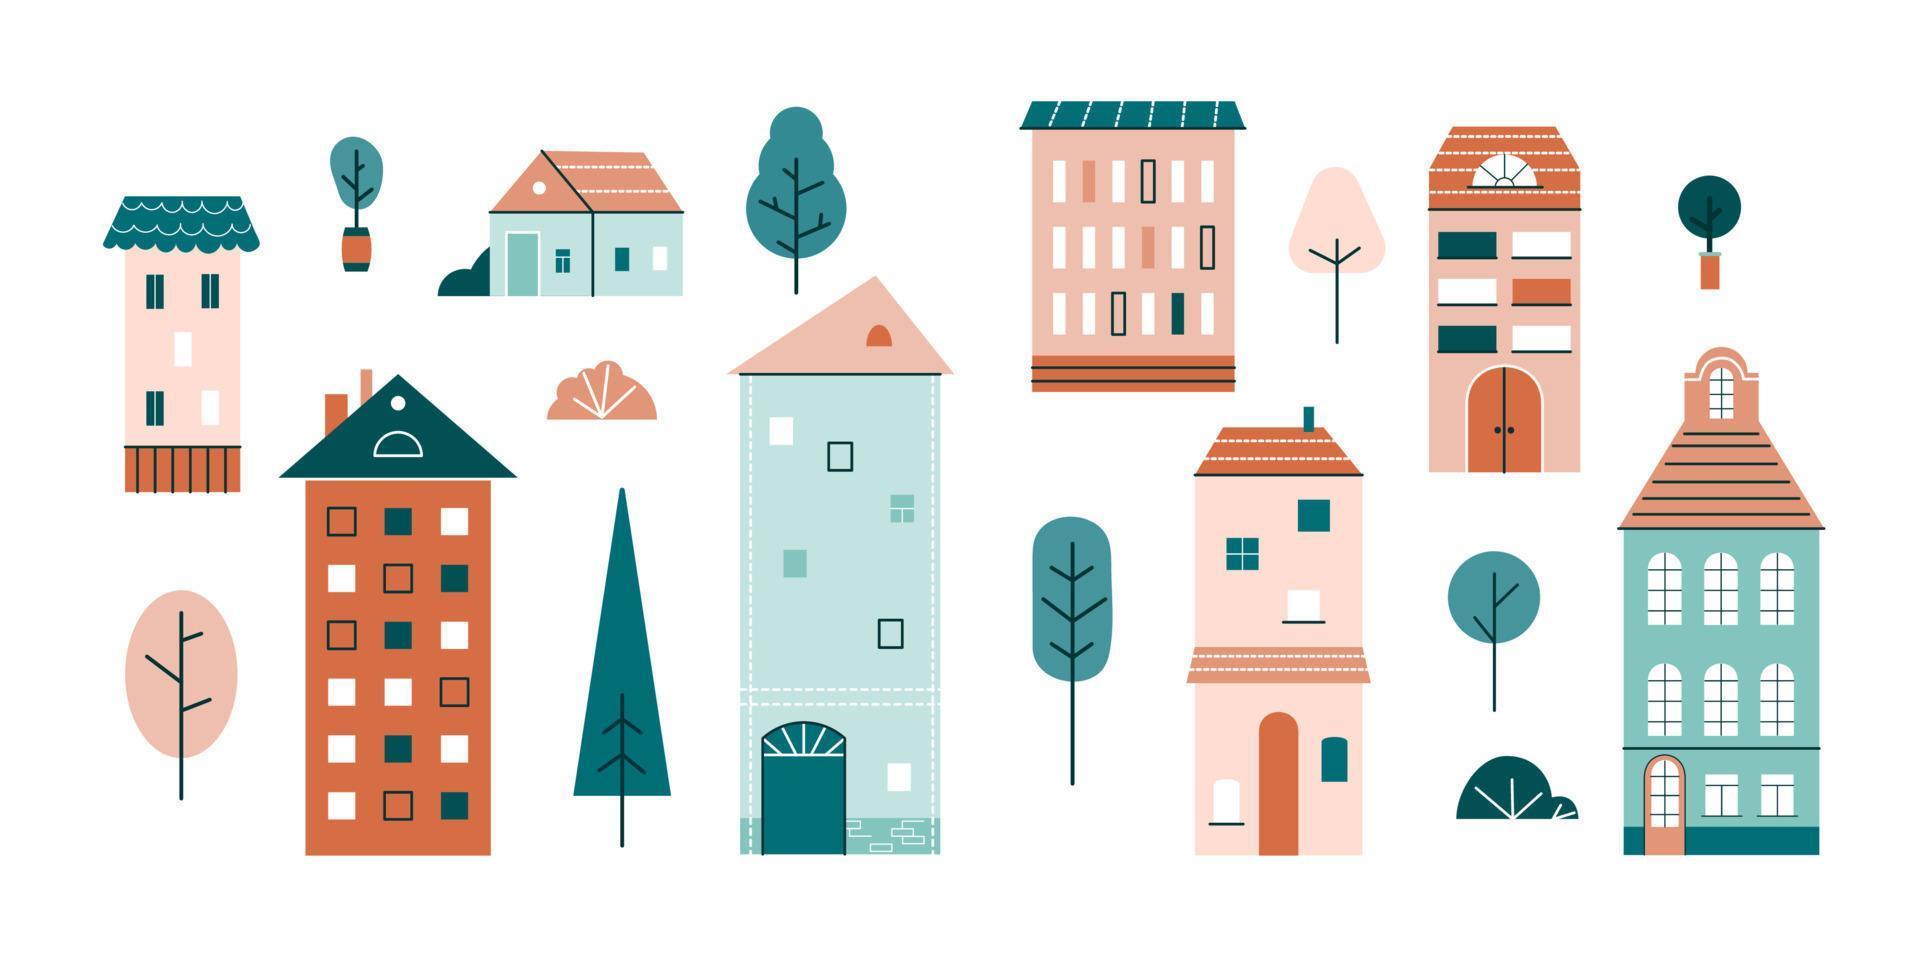 jolies petites maisons, petits bâtiments, arbres et buissons de style scandinave. ensemble de maisons urbaines avec fenêtres, toit et cheminées. illustration de vecteur plat couleur isolé sur fond blanc